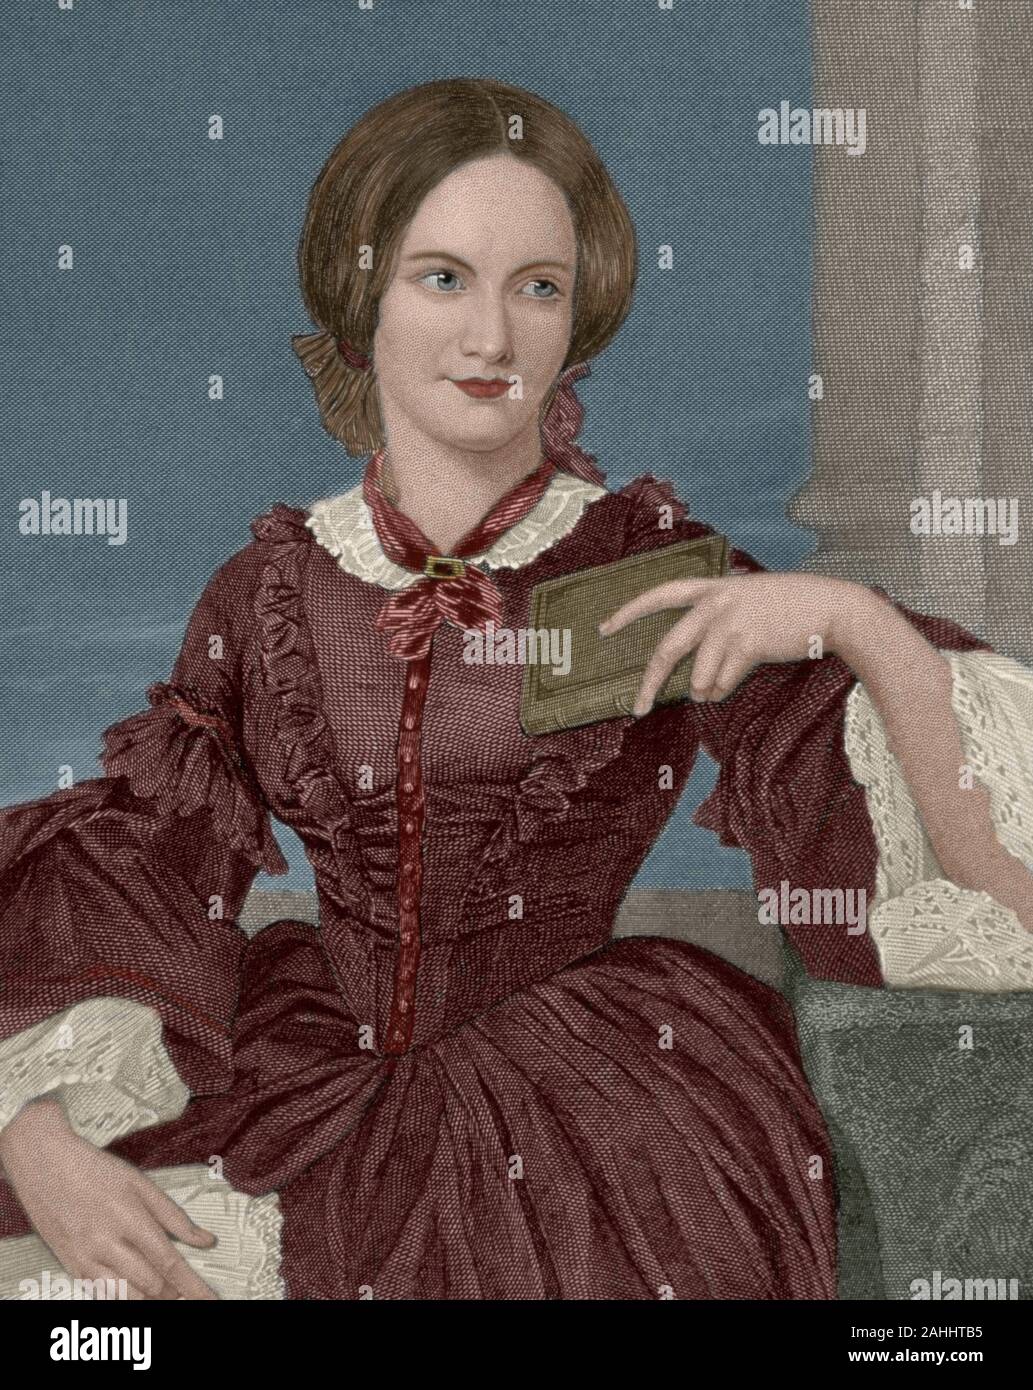 Charlotte Brontë (Thornton, Yorkshire, Inglaterra, 1816-Haworth, Yorkshire, 1855). Inglés novelista destaca por Jane Eyre, 1847. Grabado. Posteriormente coloración. Foto de stock